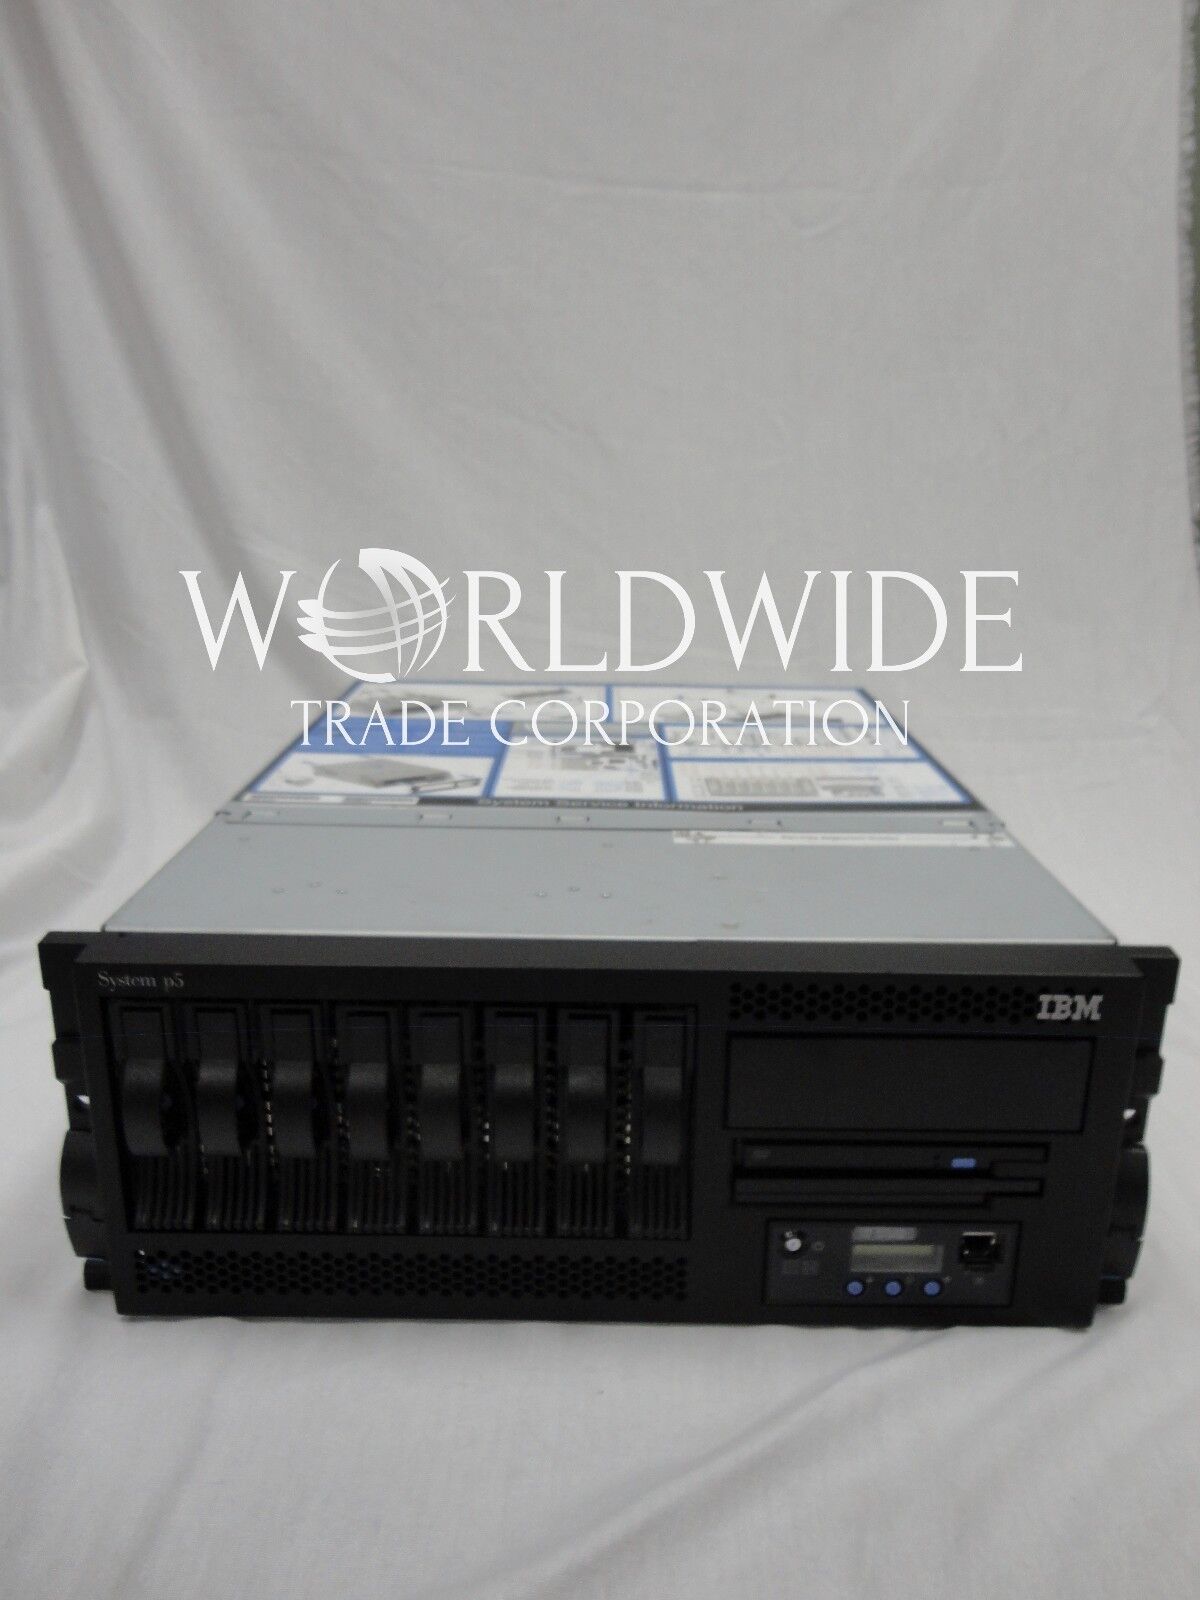 IBM 9131 52A Server, 1.65GHz 2-way POWER5+ can custom configure